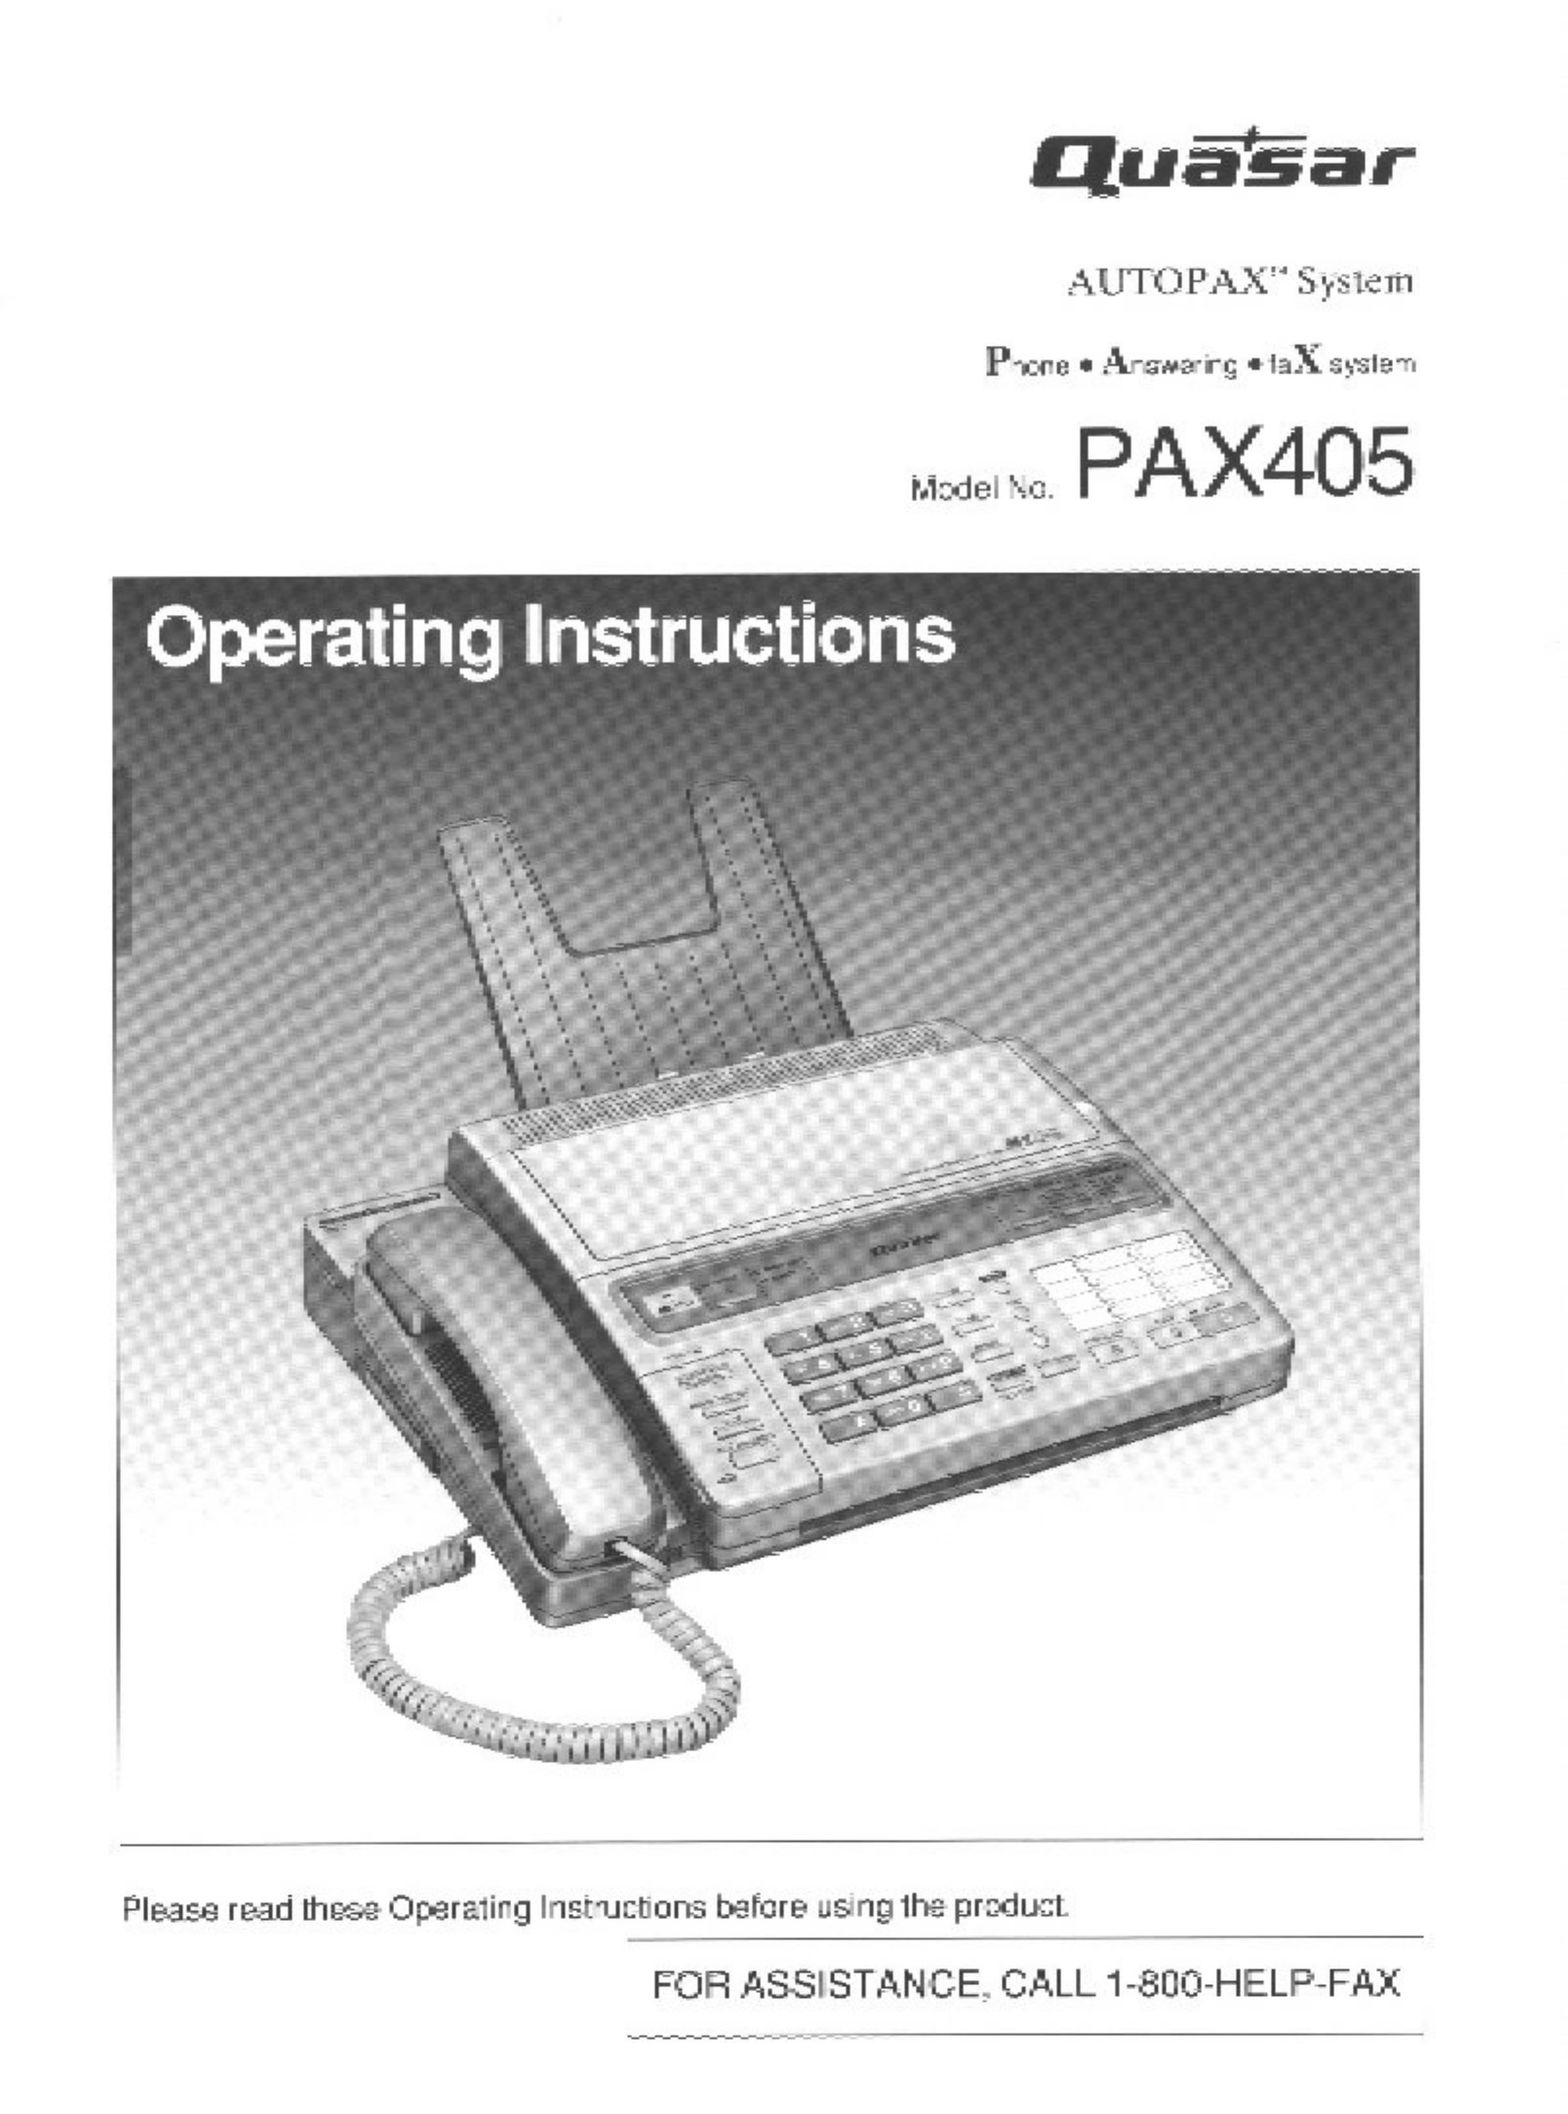 Quasar PAX405 Fax Machine User Manual